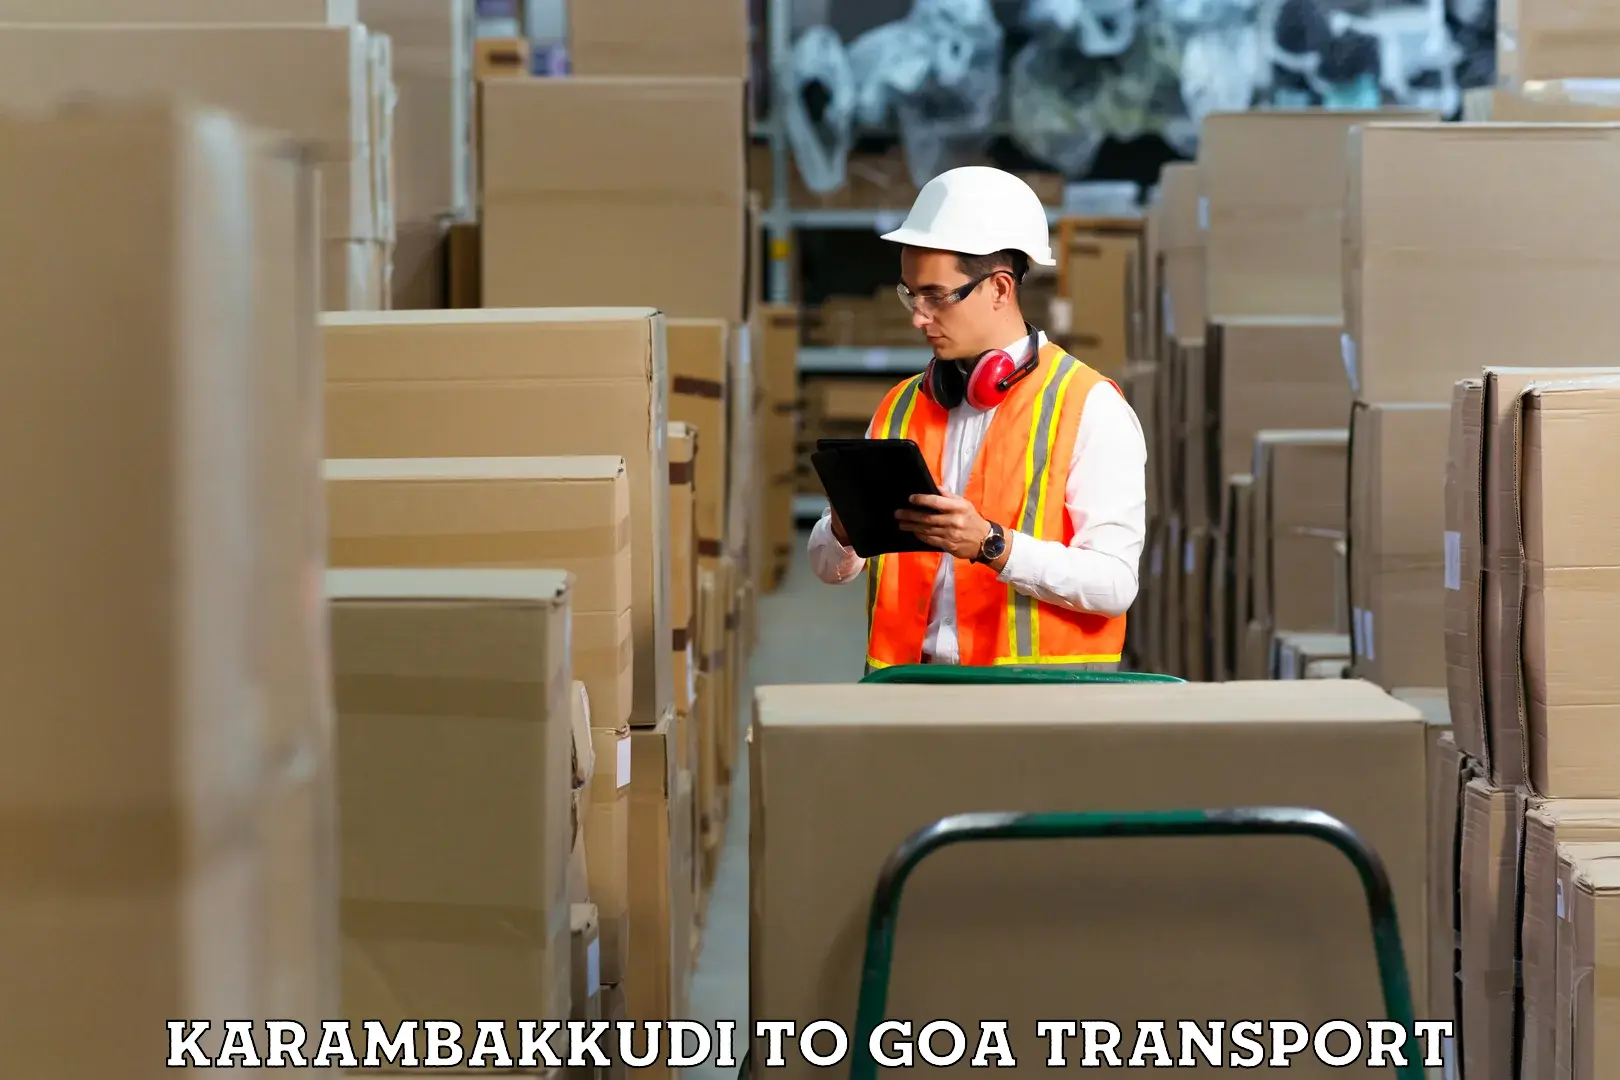 Two wheeler parcel service Karambakkudi to Goa